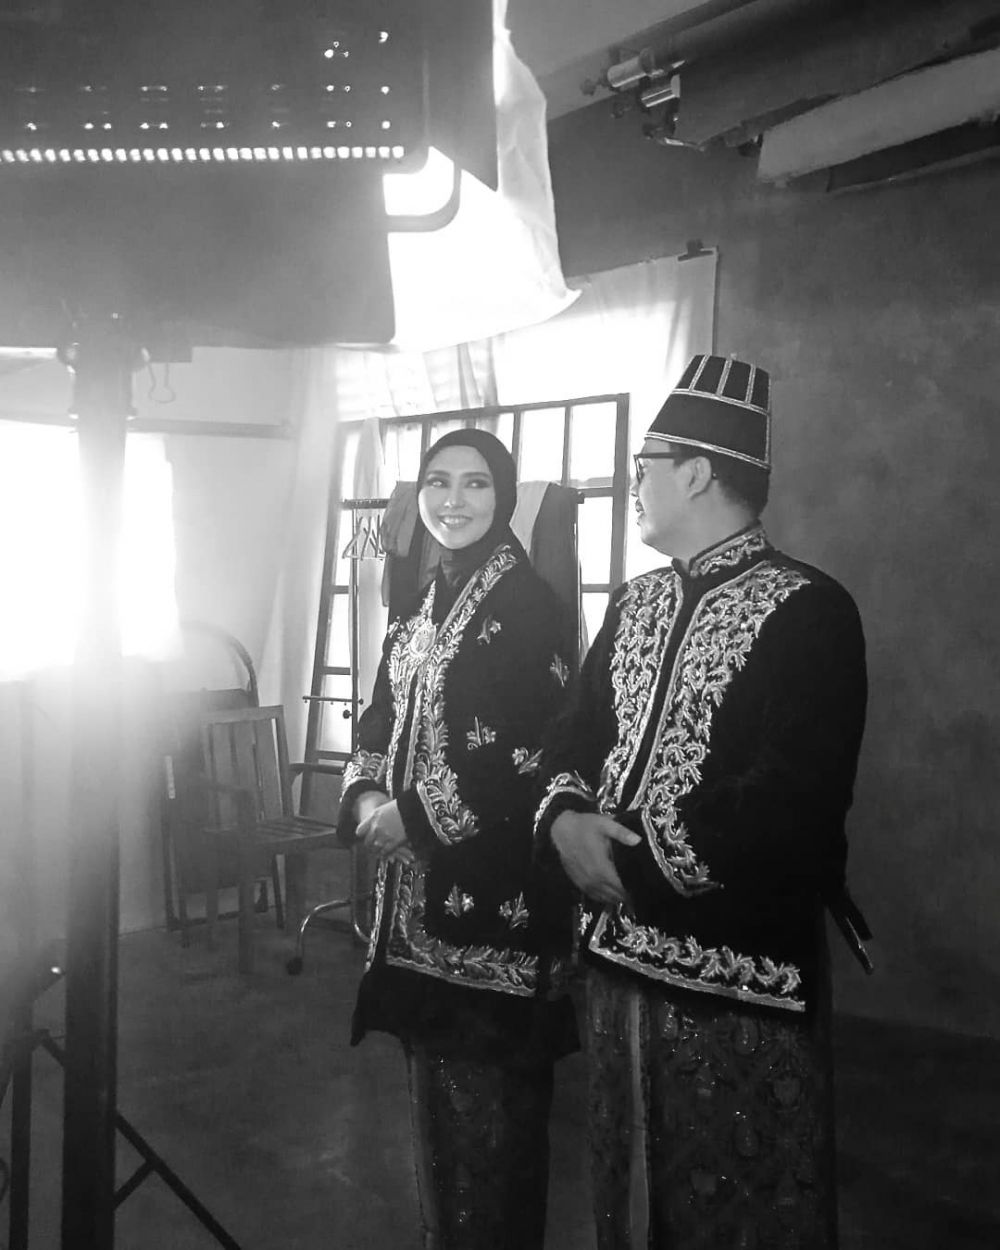 7 Potret prewedding Rara Nawangsih 'Ikatan Cinta', usung adat Jawa